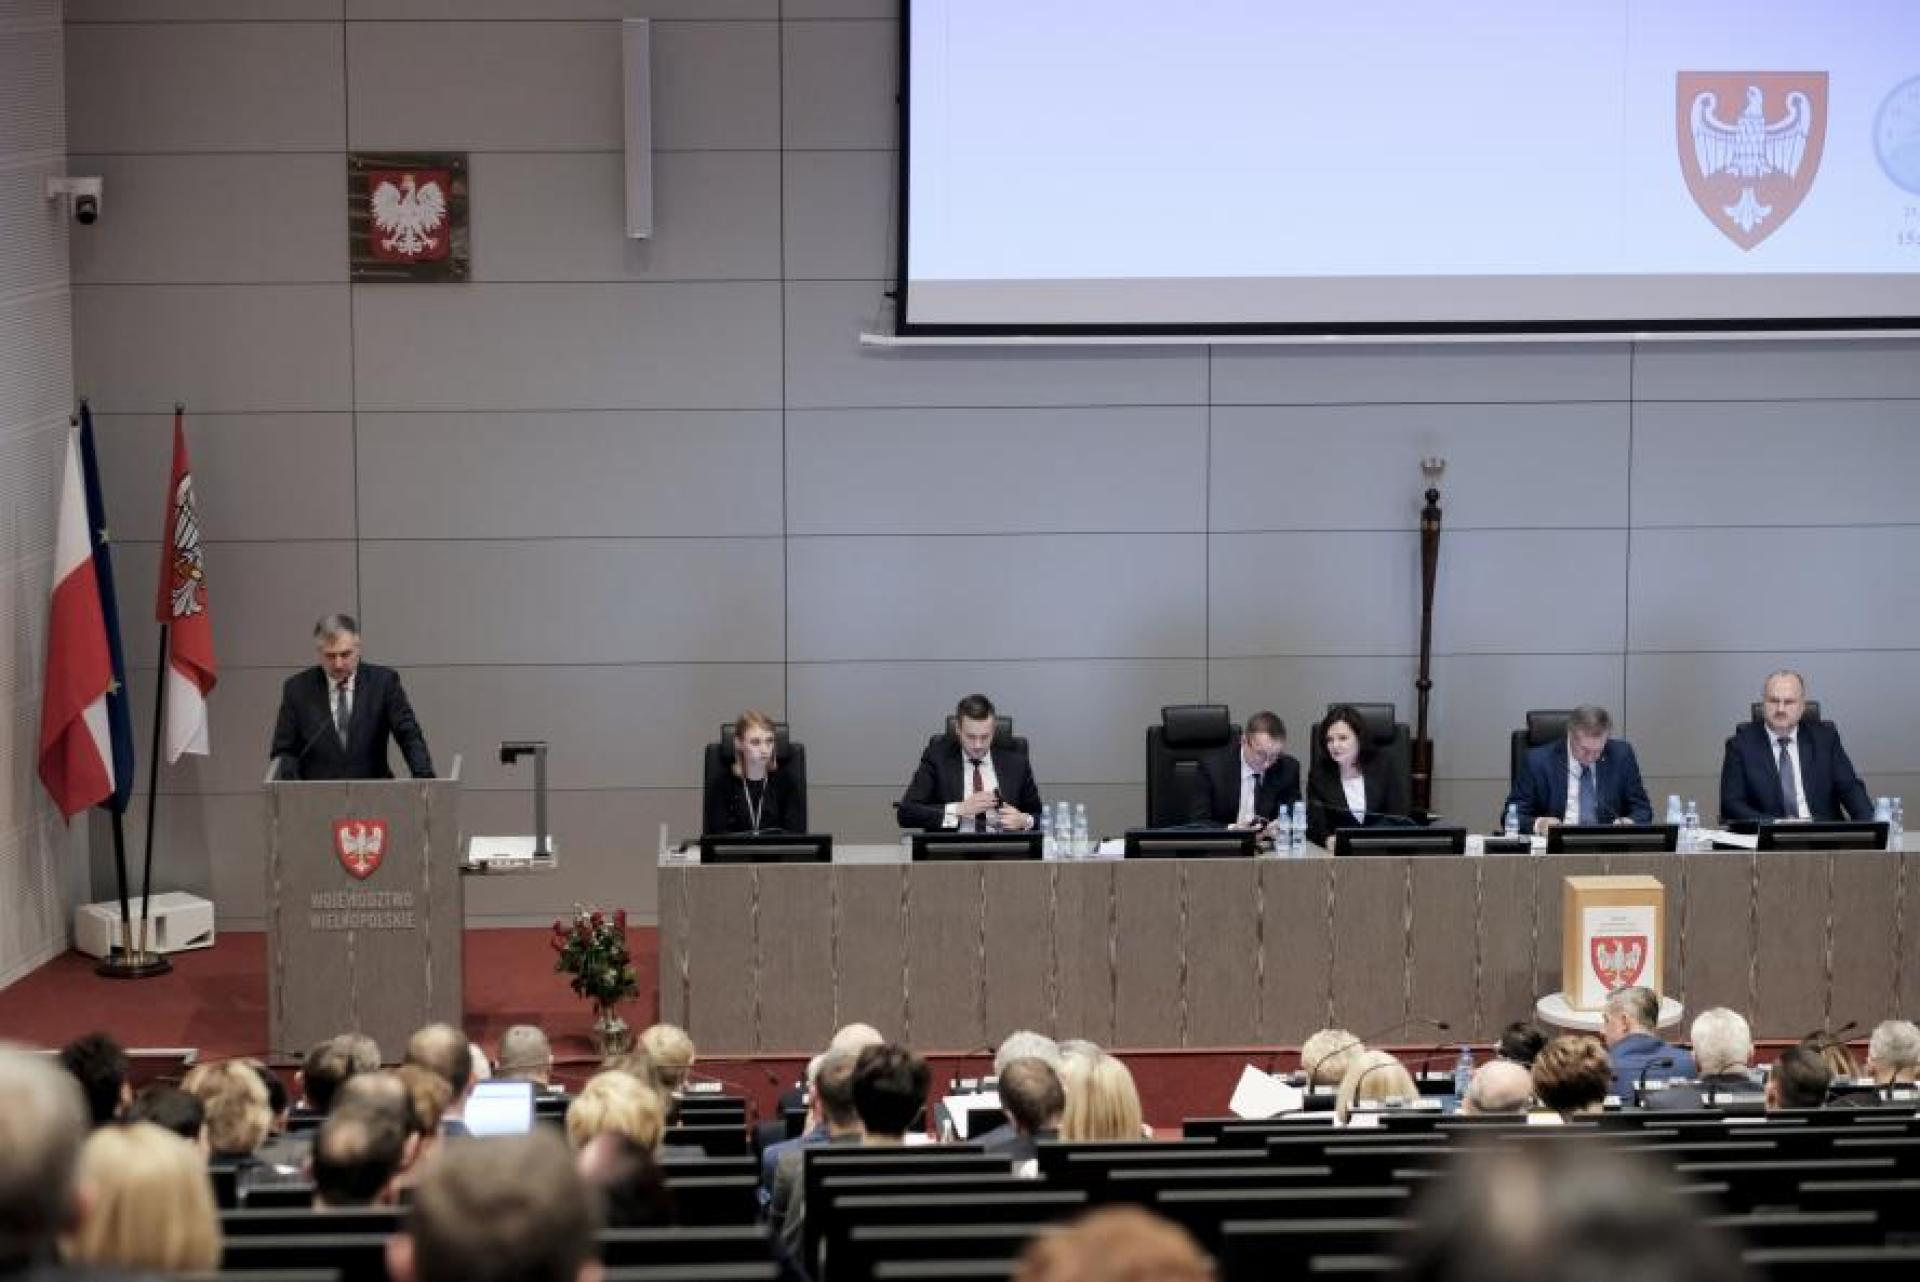 XXXVII sesja budżetowa Sejmiku Województwa Wielkopolskiego w trybie zdalnym  - zobacz więcej